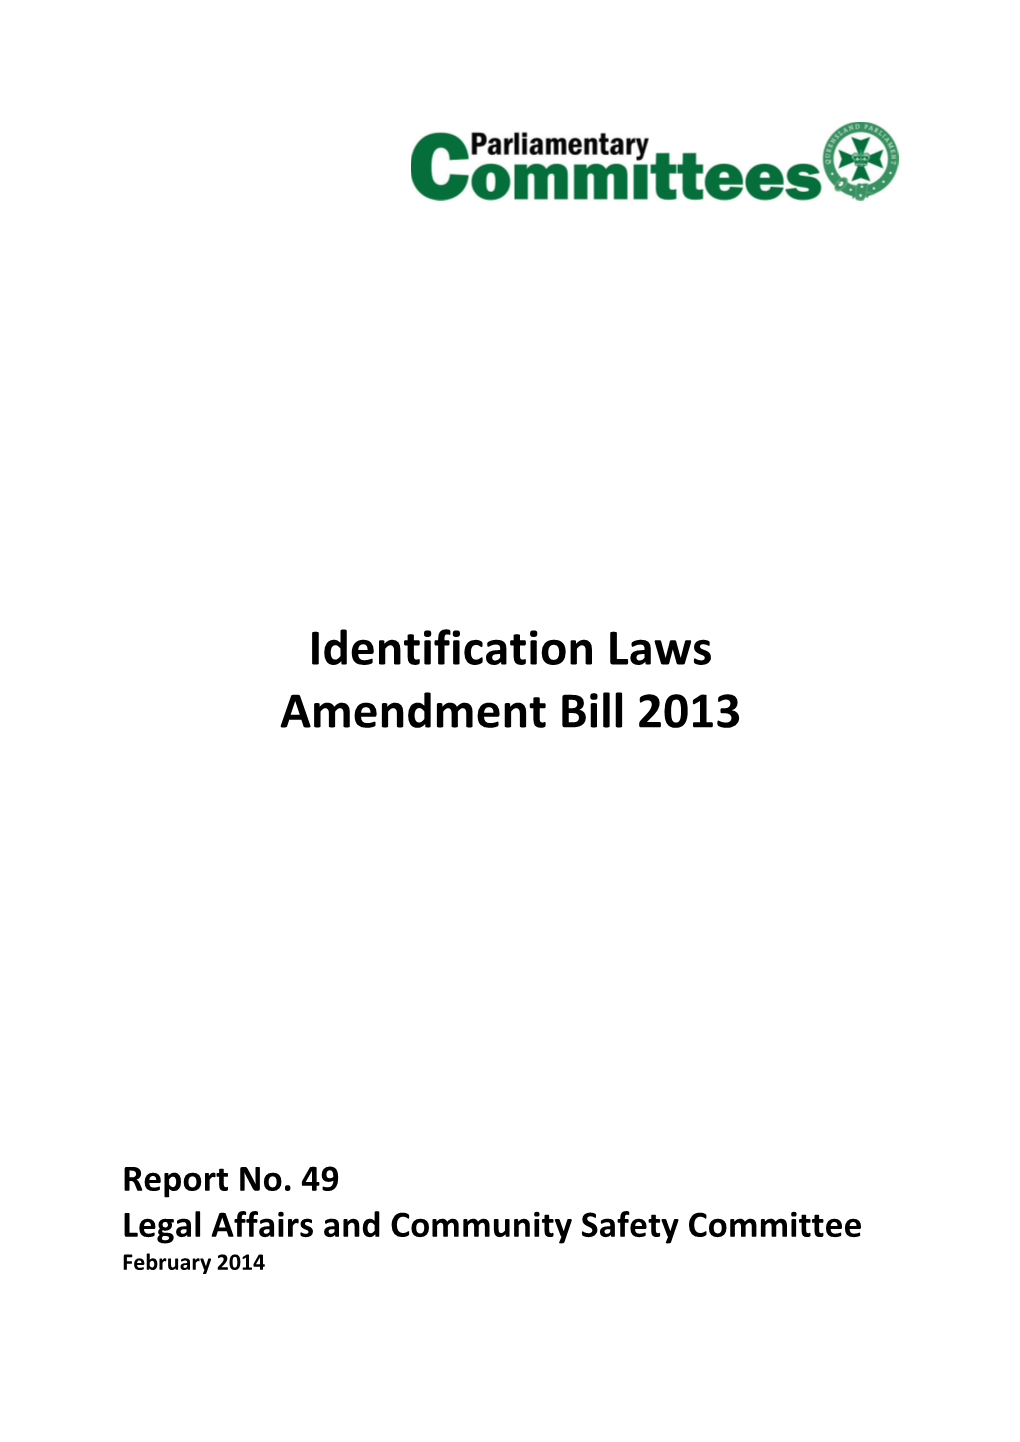 Identification Laws Amendment Bill 2013